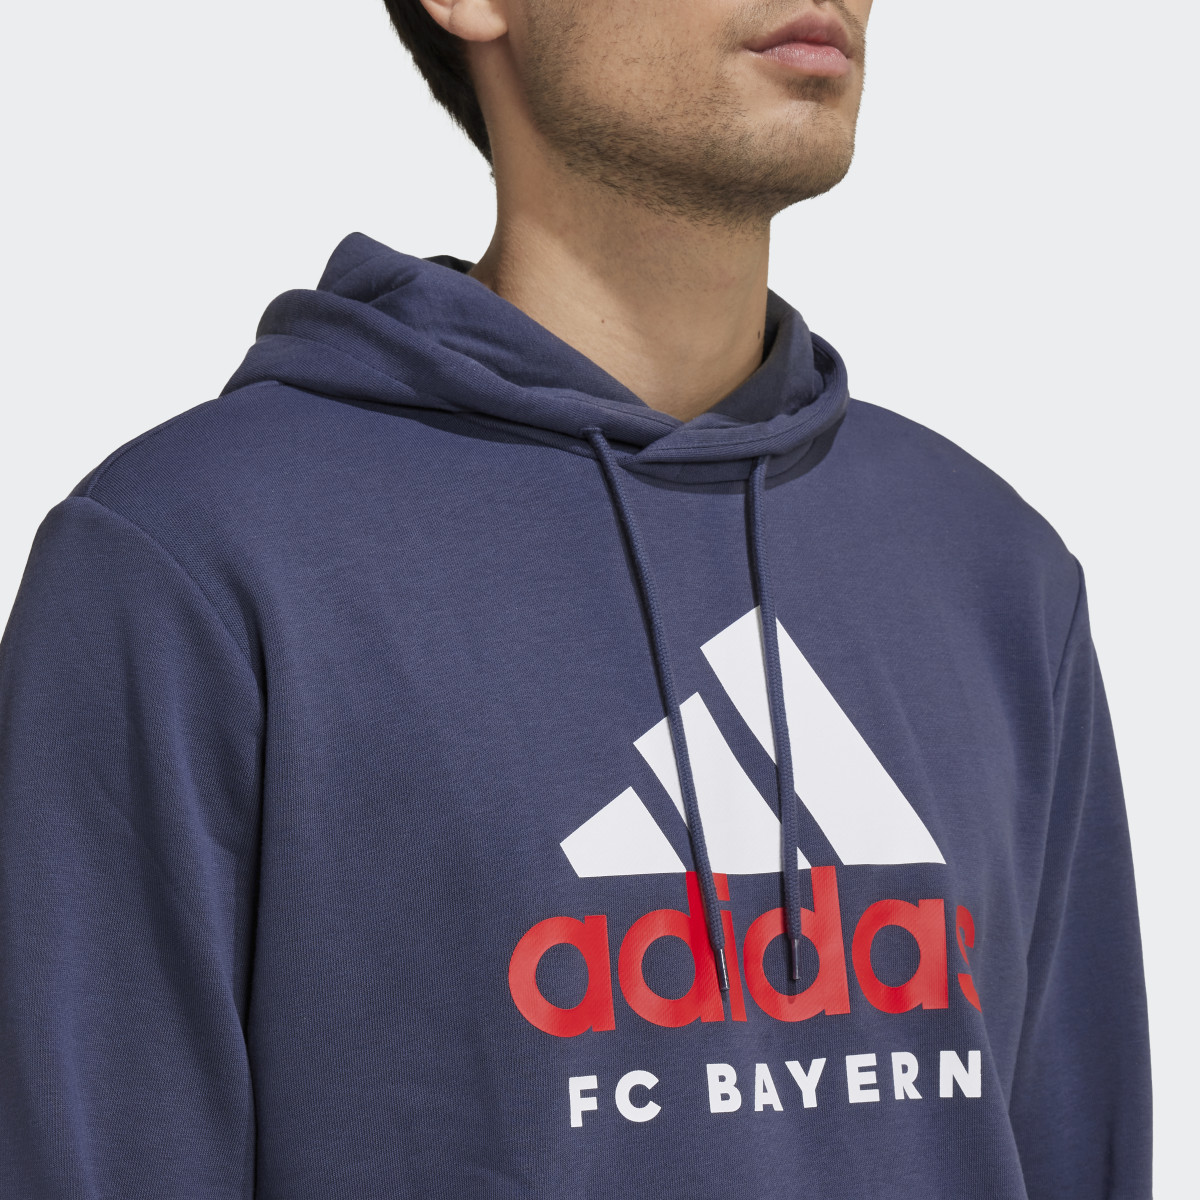 Adidas FC Bayern München DNA Graphic Hoodie. 6